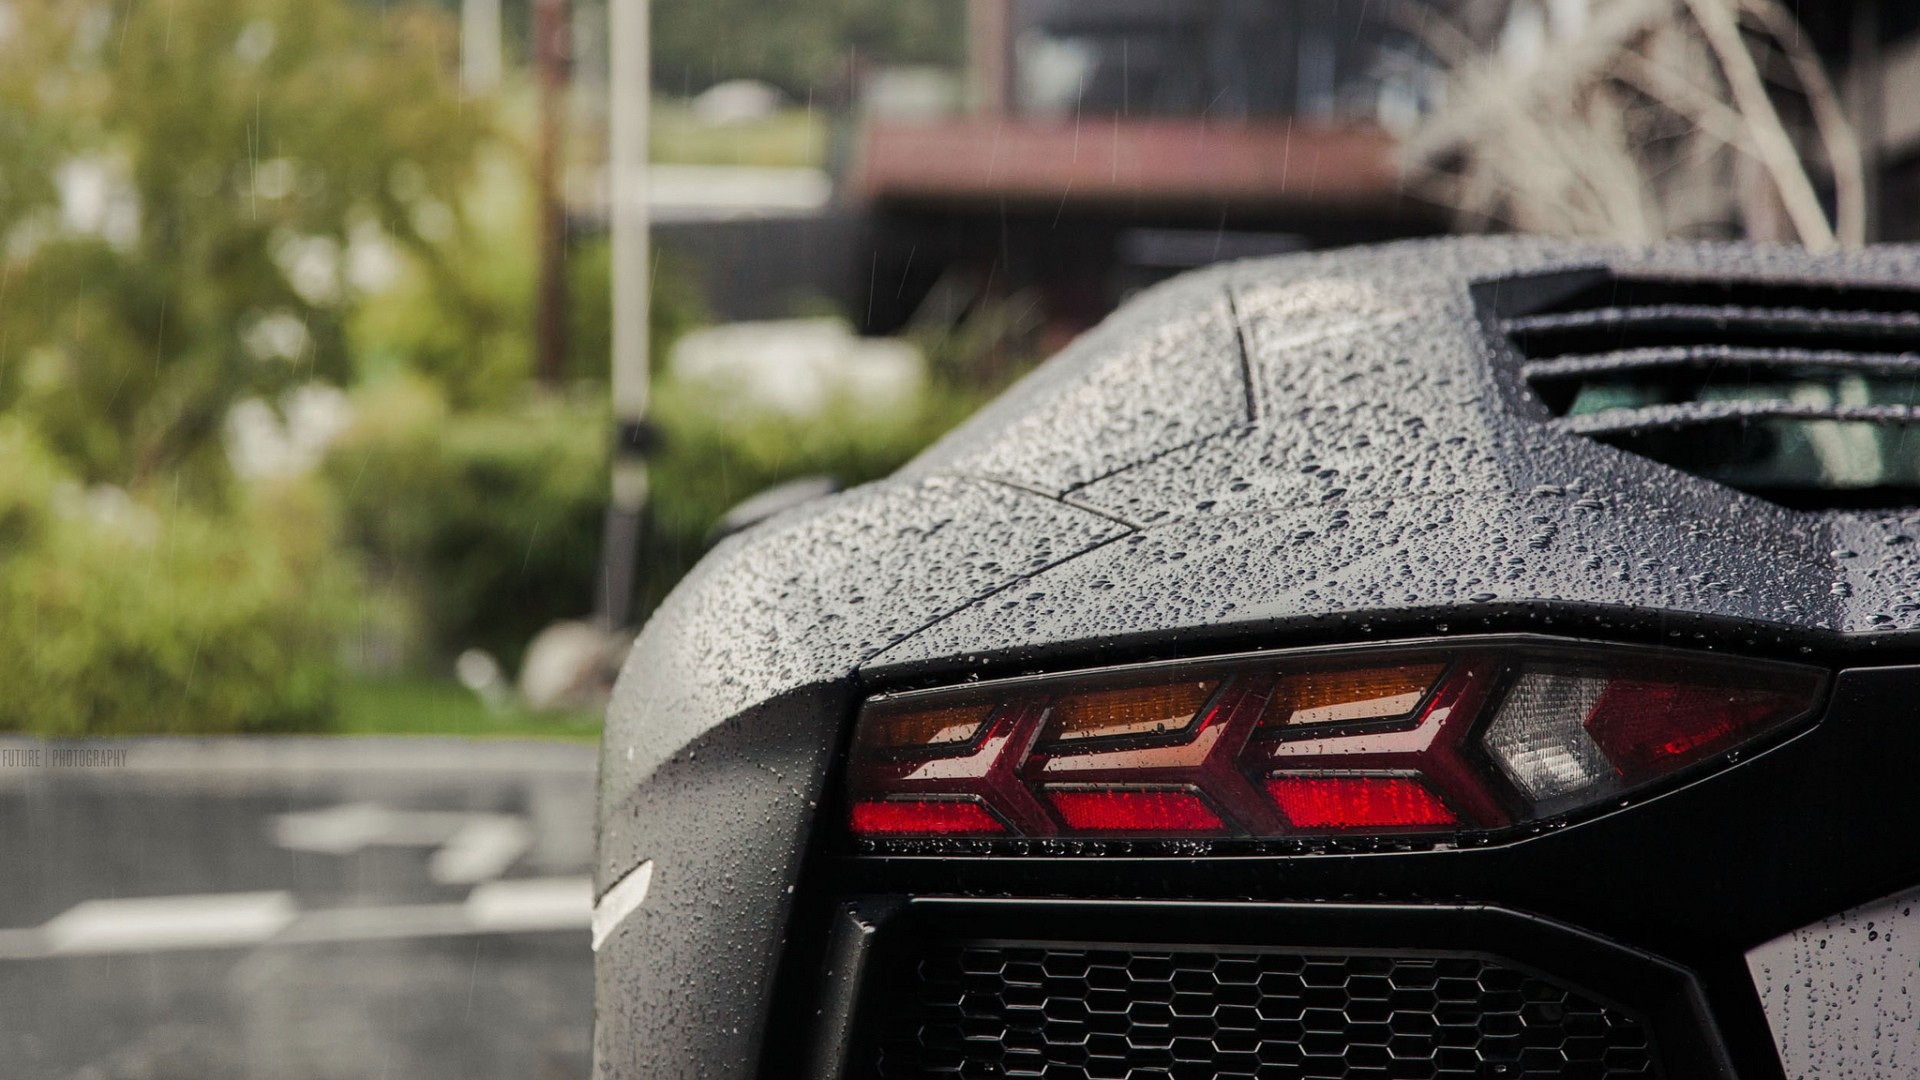 General 1920x1080 Lamborghini Aventador Lamborghini rain black cars water drops vehicle supercars car